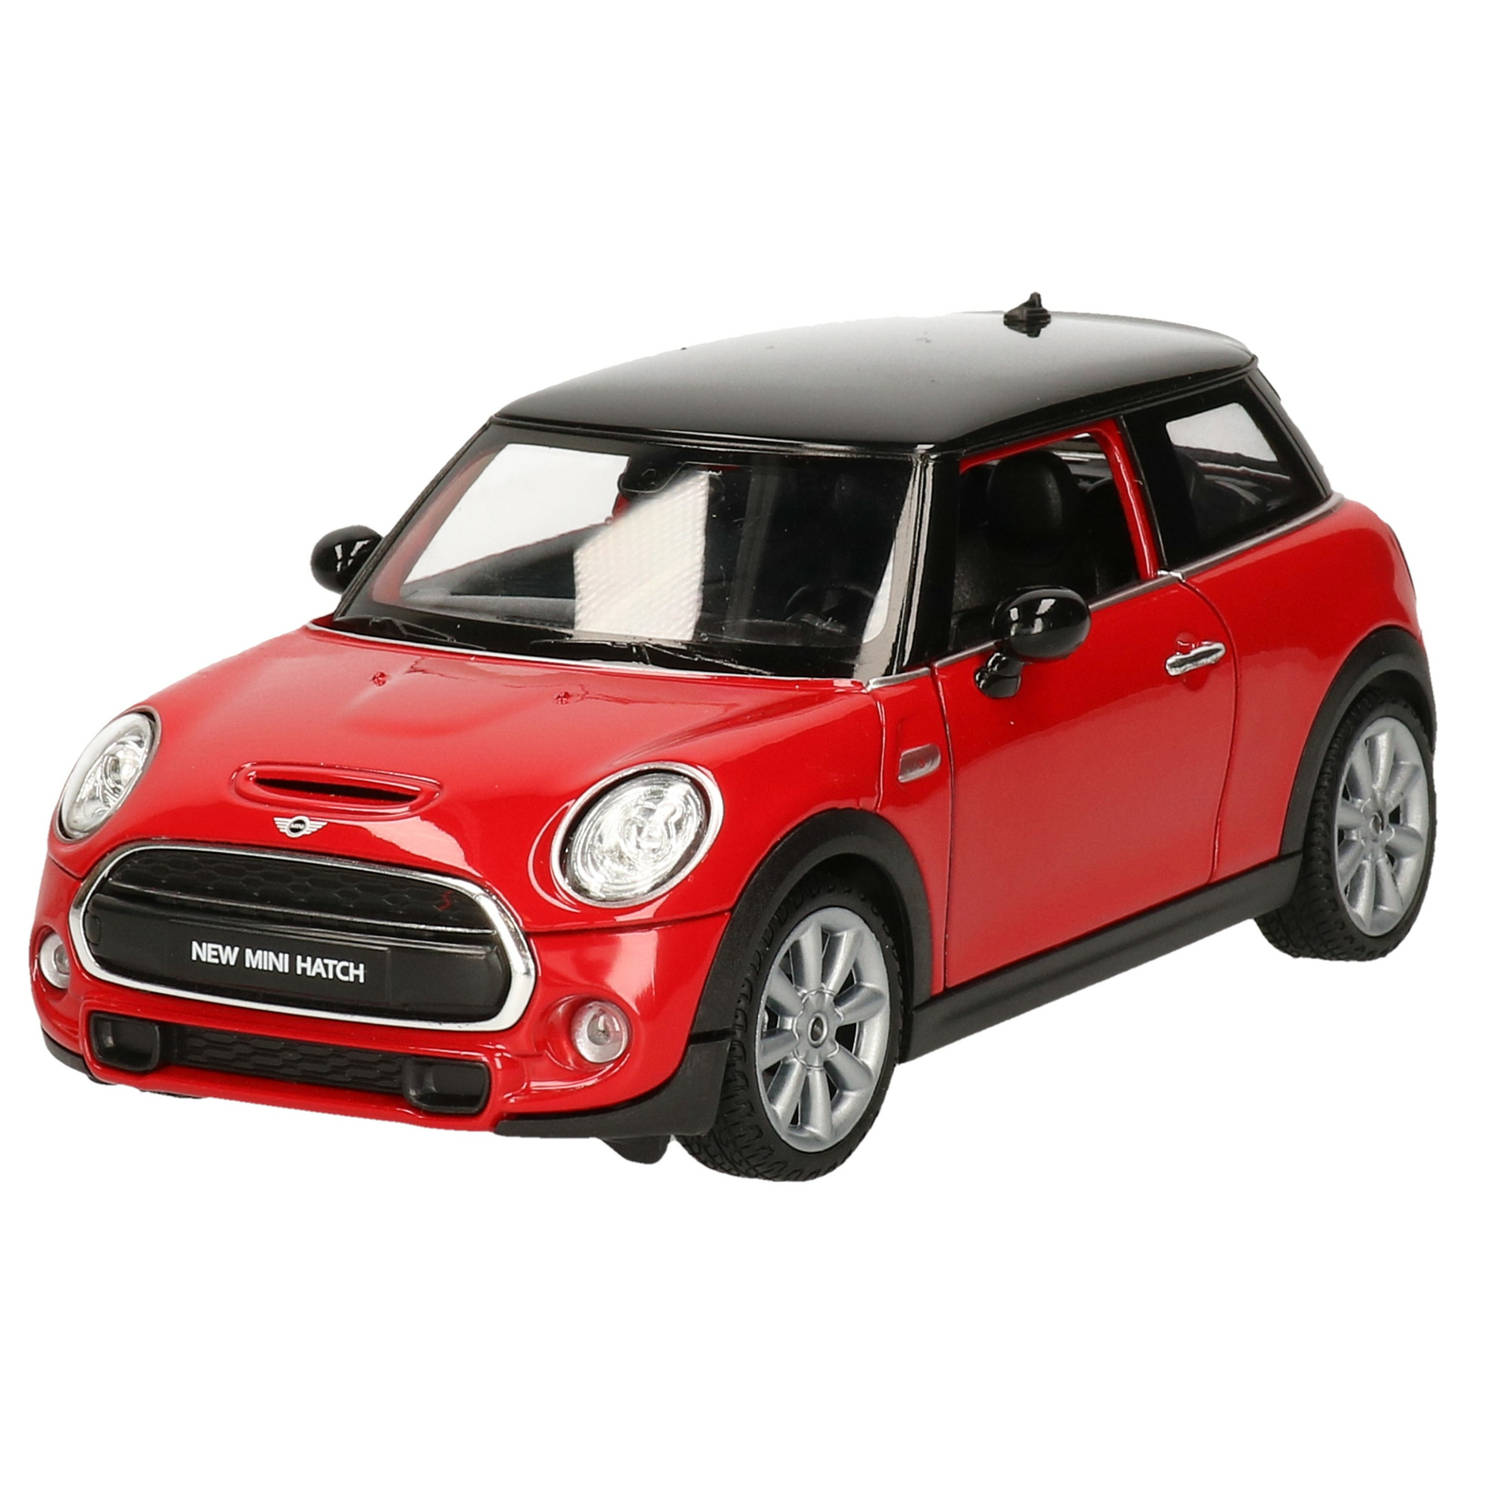 Welly modelauto/speelgoedauto Mini Cooper S - rood - schaal 1:24/16 x 7 x 7 cm